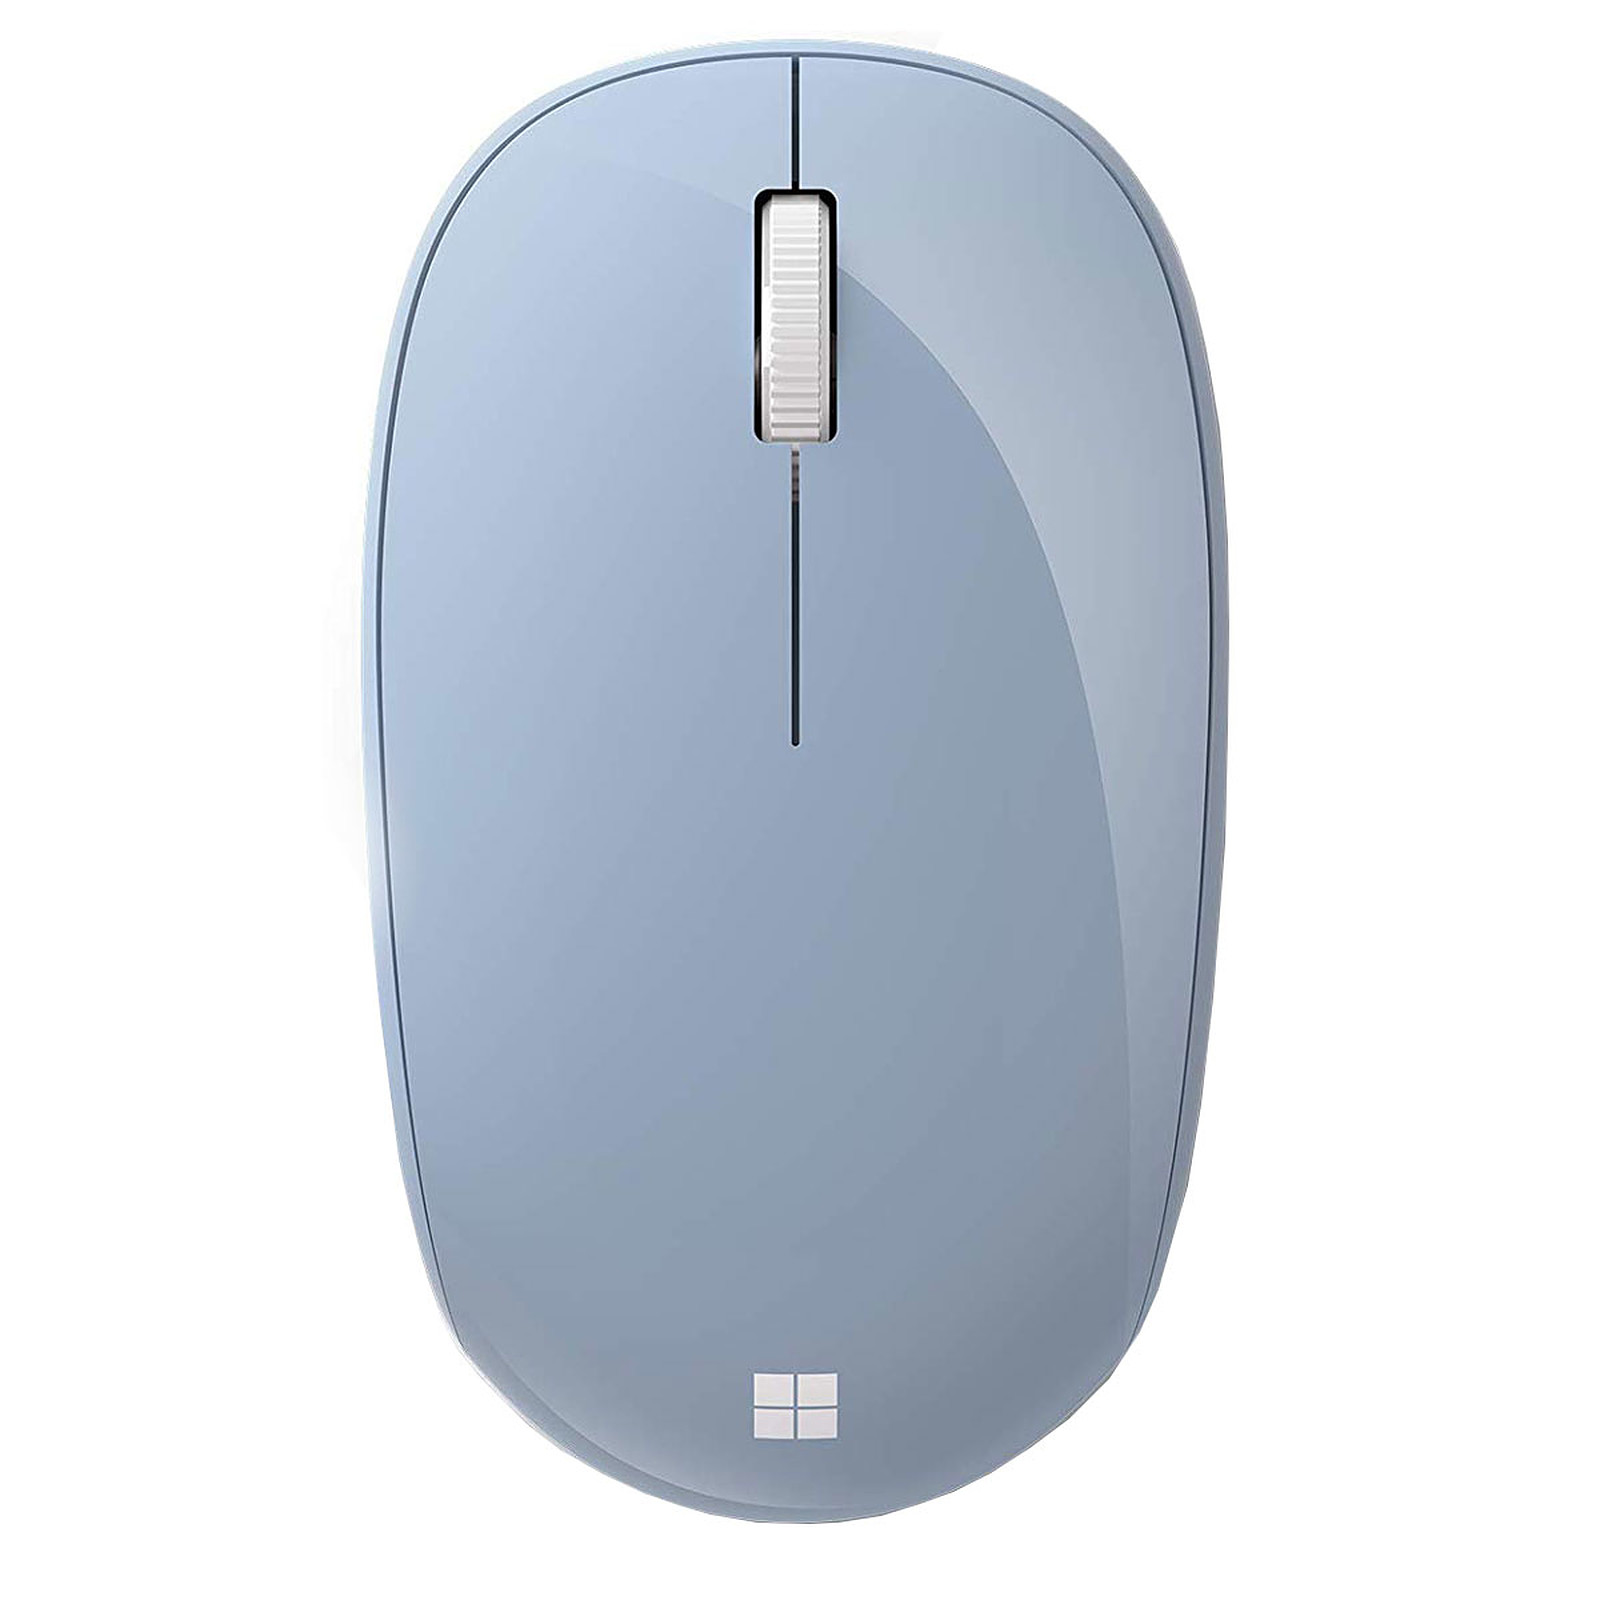 Souris Microsoft Bluetooth Mouse Bleu Pastel (RJN-00026) - Cyber Planet